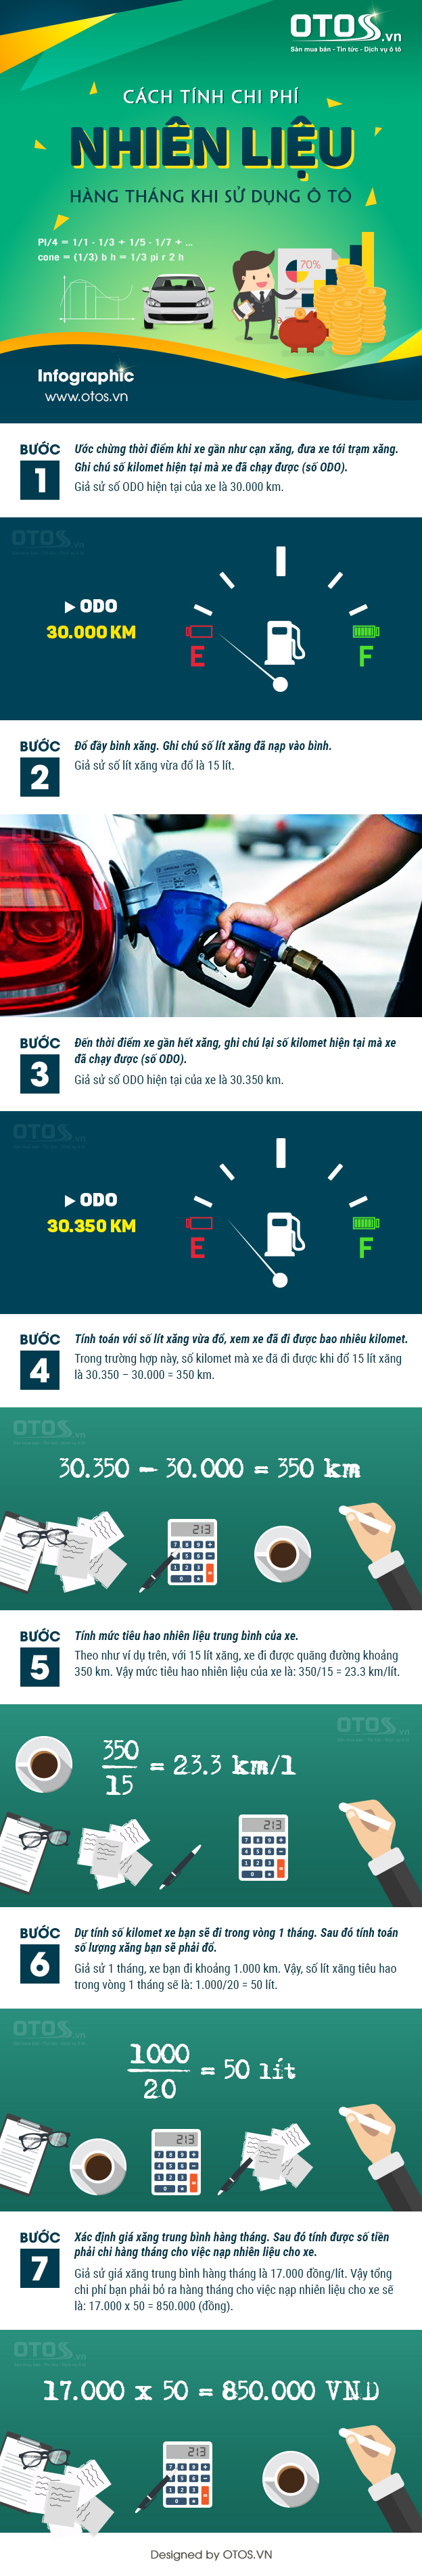 Cách tính chi phí nhiên liệu hàng tháng khi sử dụng ô tô